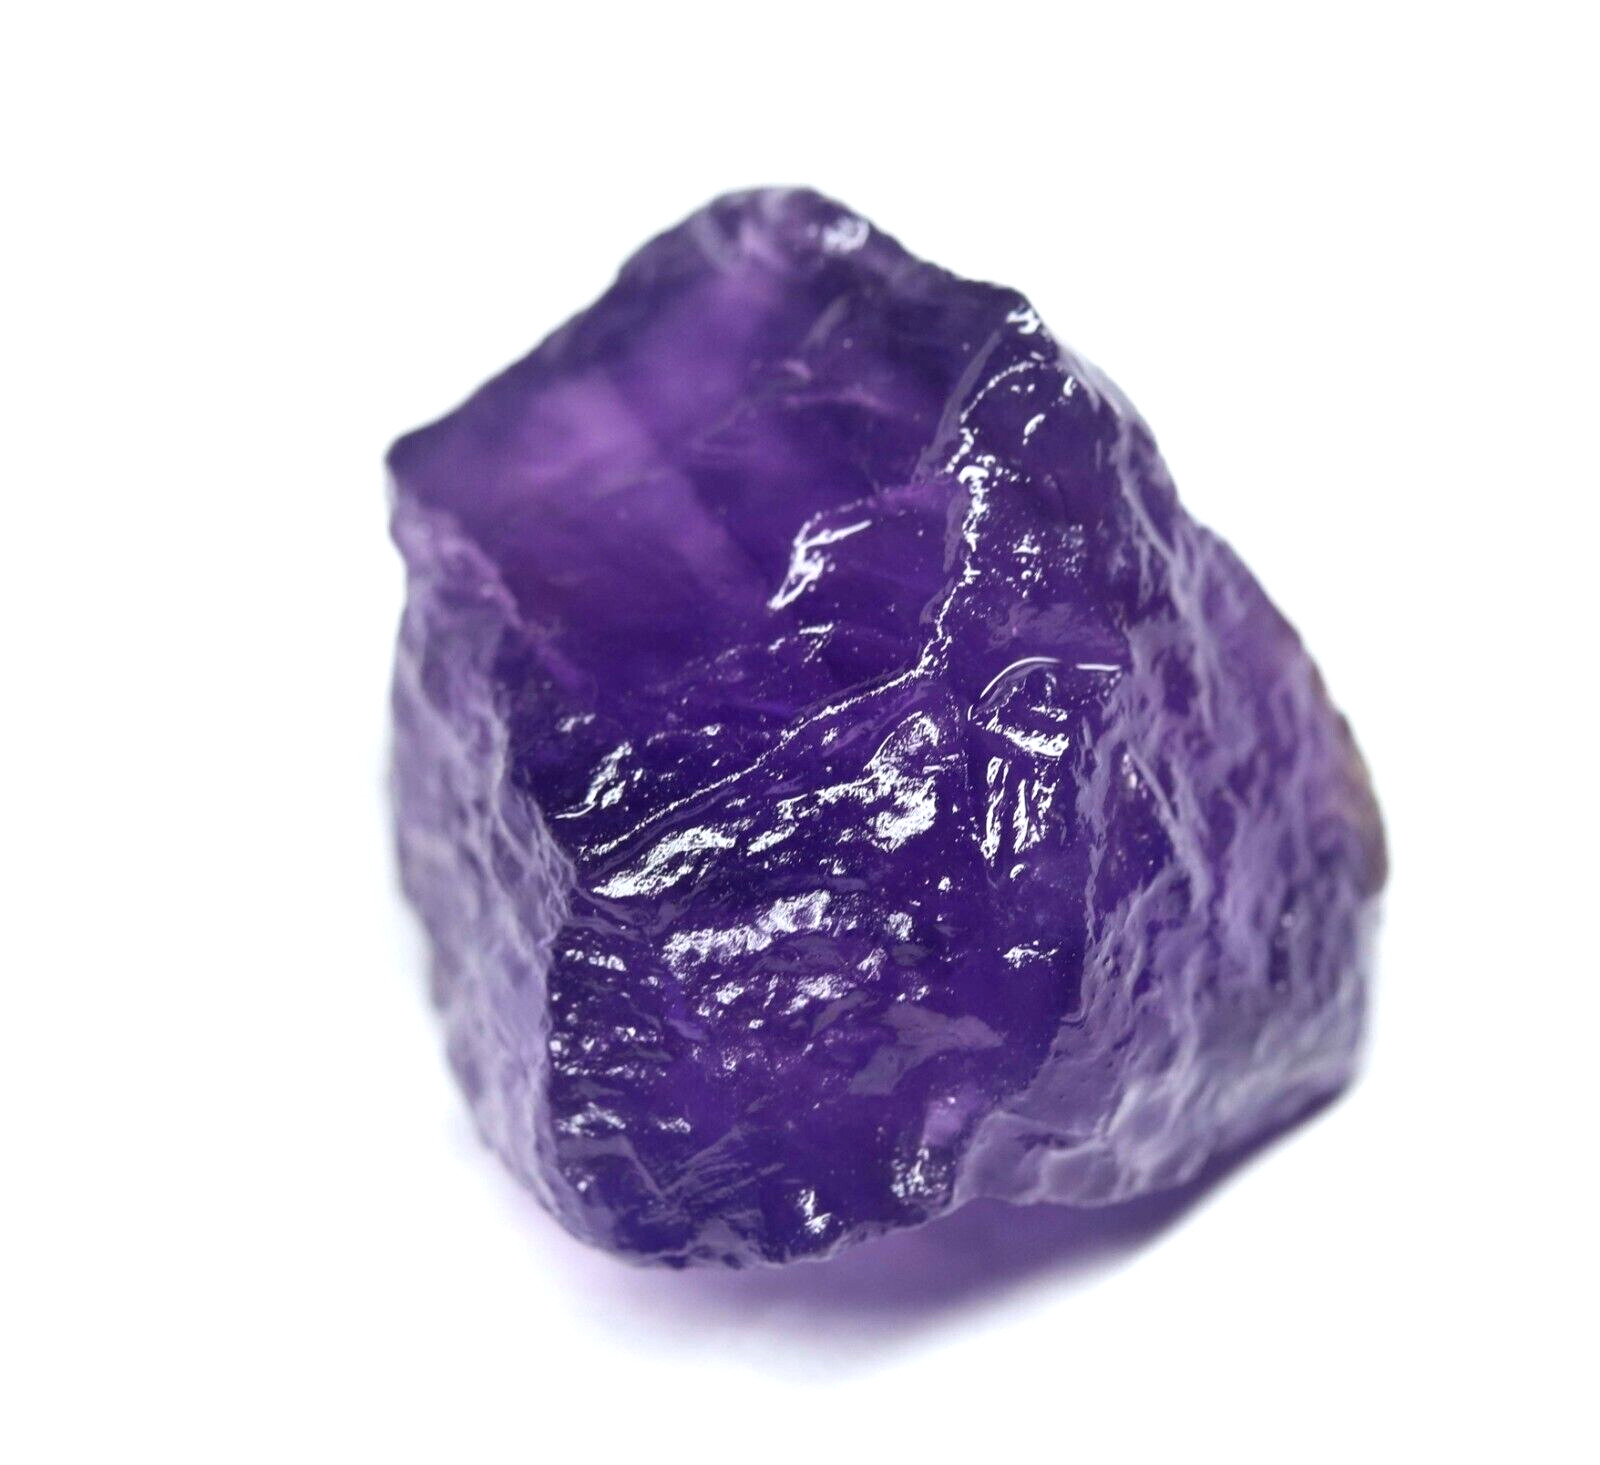 Certified Natural Untreated Dark Purple African Amethyst Loose Gemstone 46.95